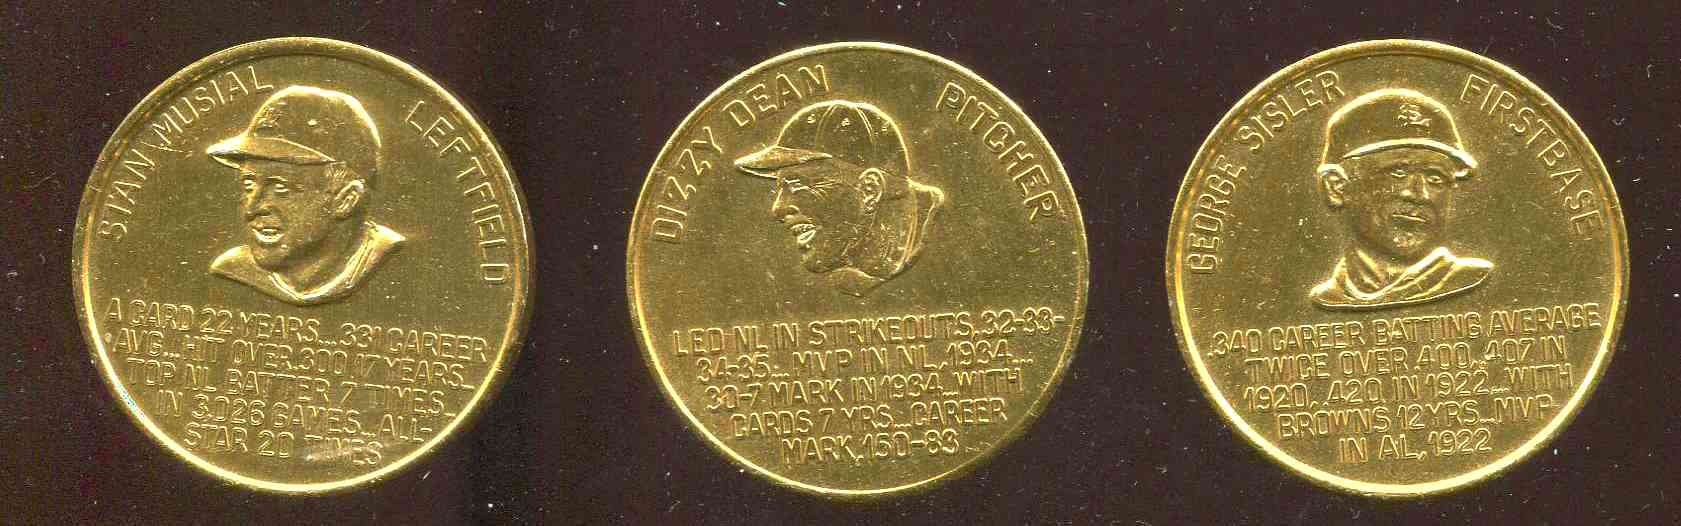 1966 Busch Stadium Immortals COIN - Stan Musial (Cardinals) Baseball cards value